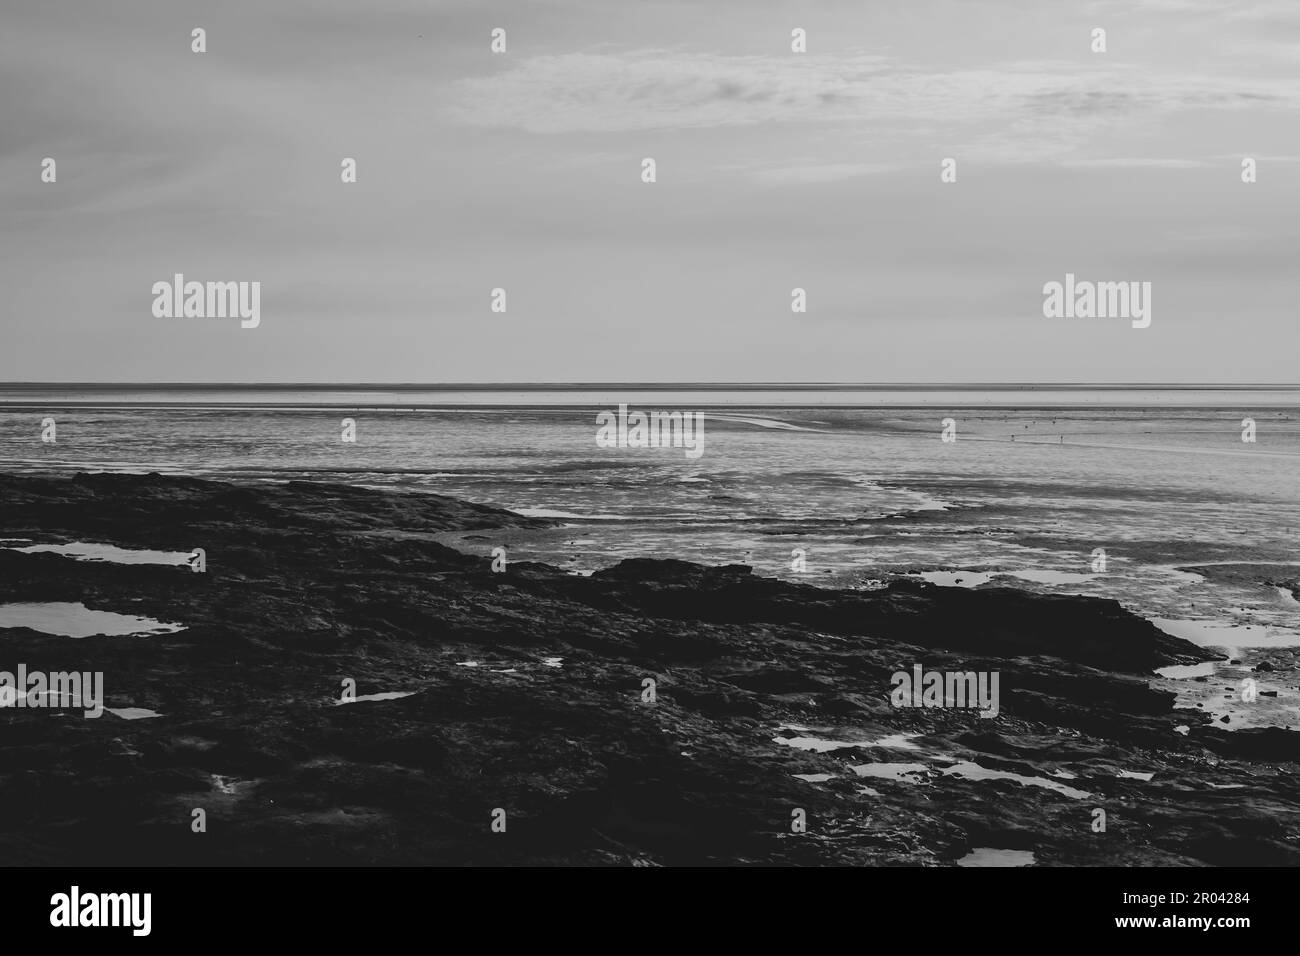 Photo noir et blanc d'un paysage marin Banque D'Images